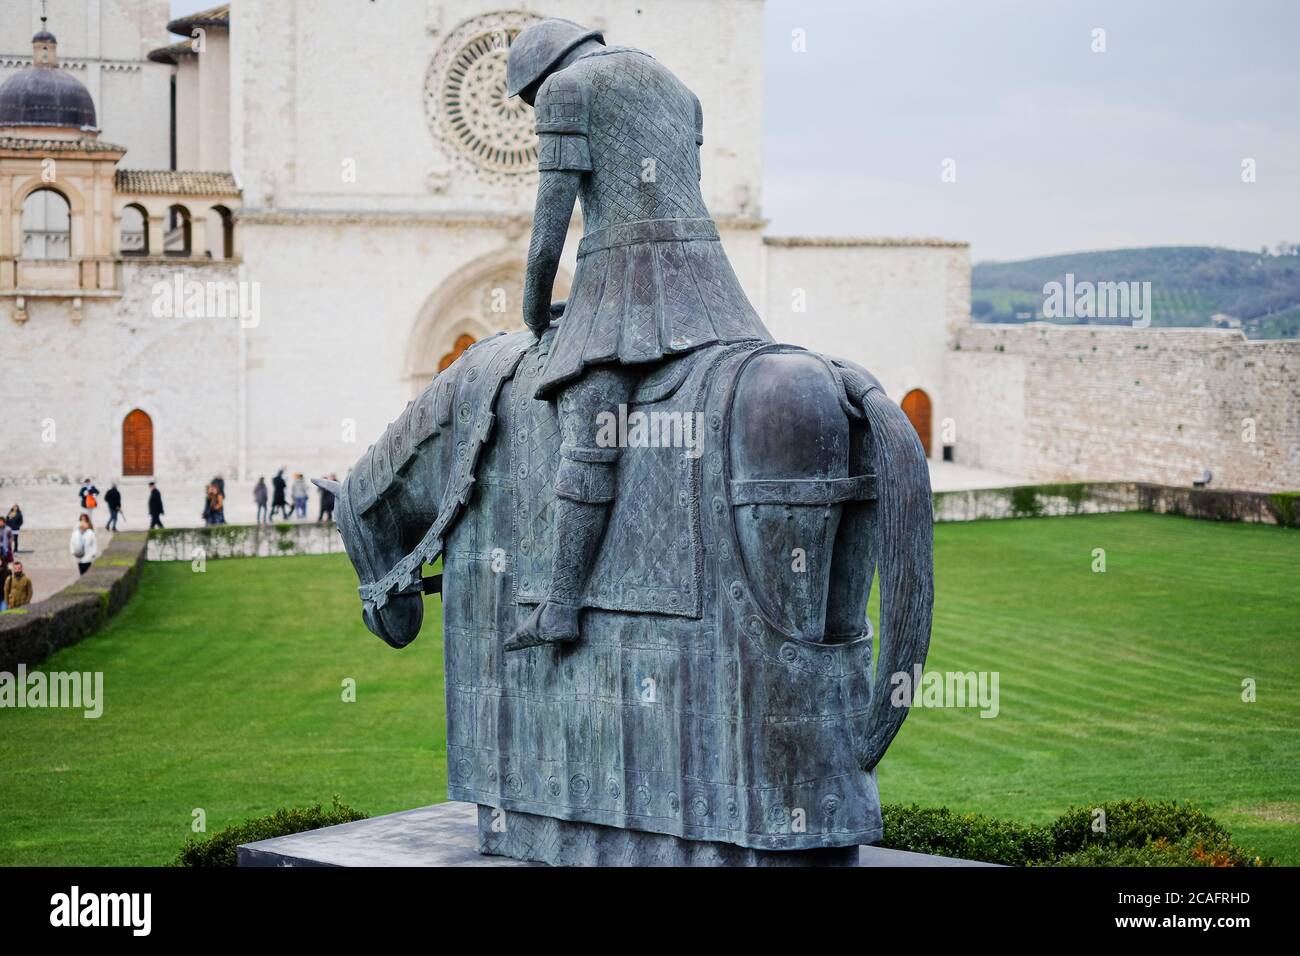 Assisi, italia - giugno 30 2020: Famosa scultura in bronzo di fronte alla chiesa di san francesco d'Assisi con i pellegrini in visita,italia Foto Stock